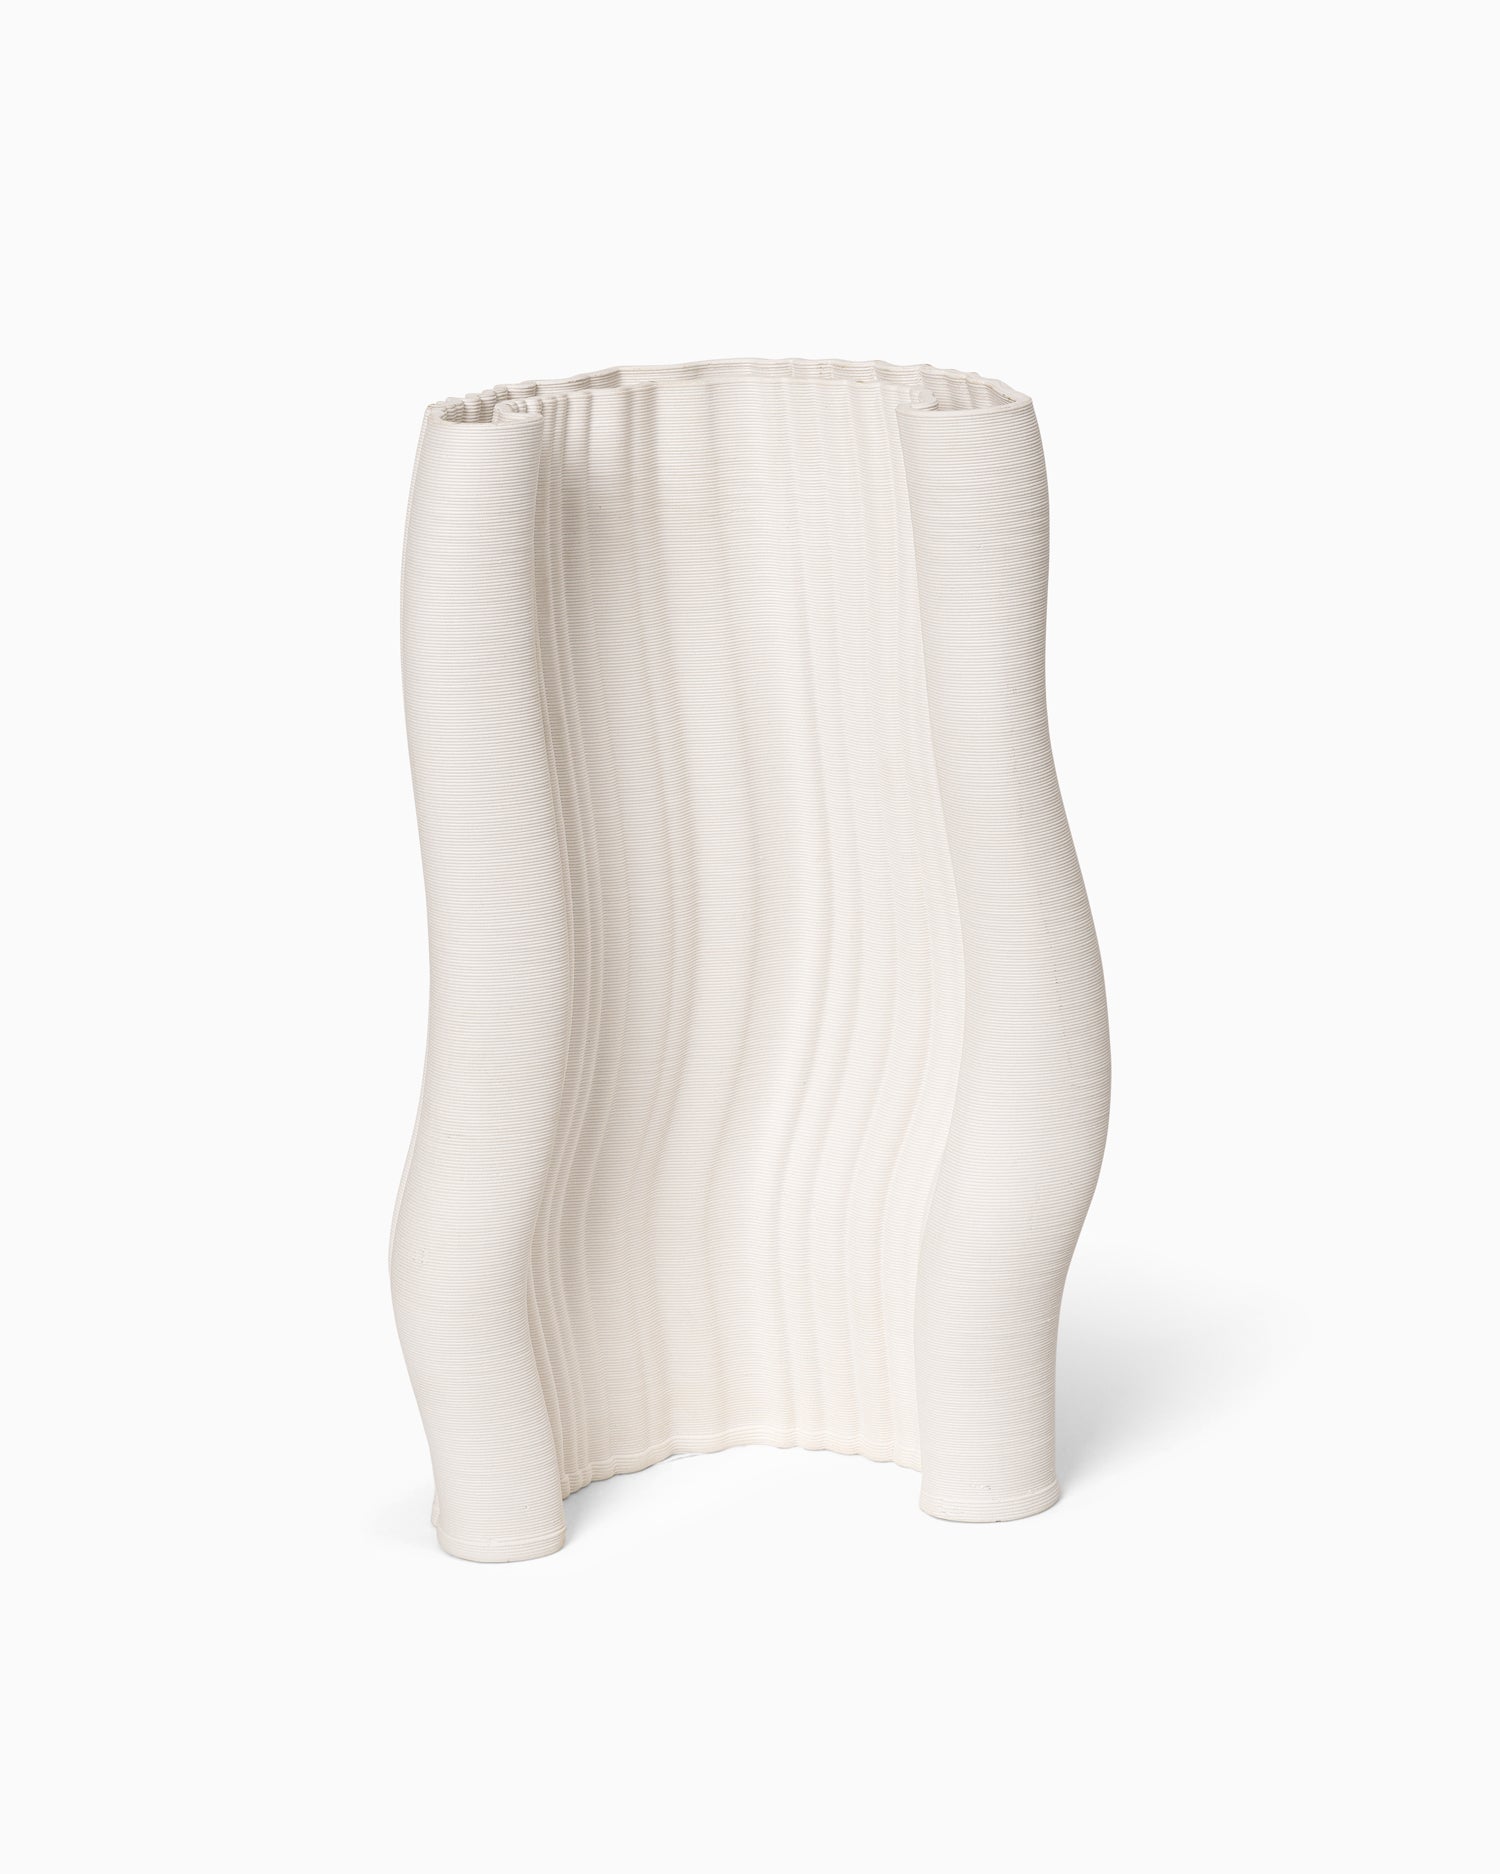 Moire Vase - Off White